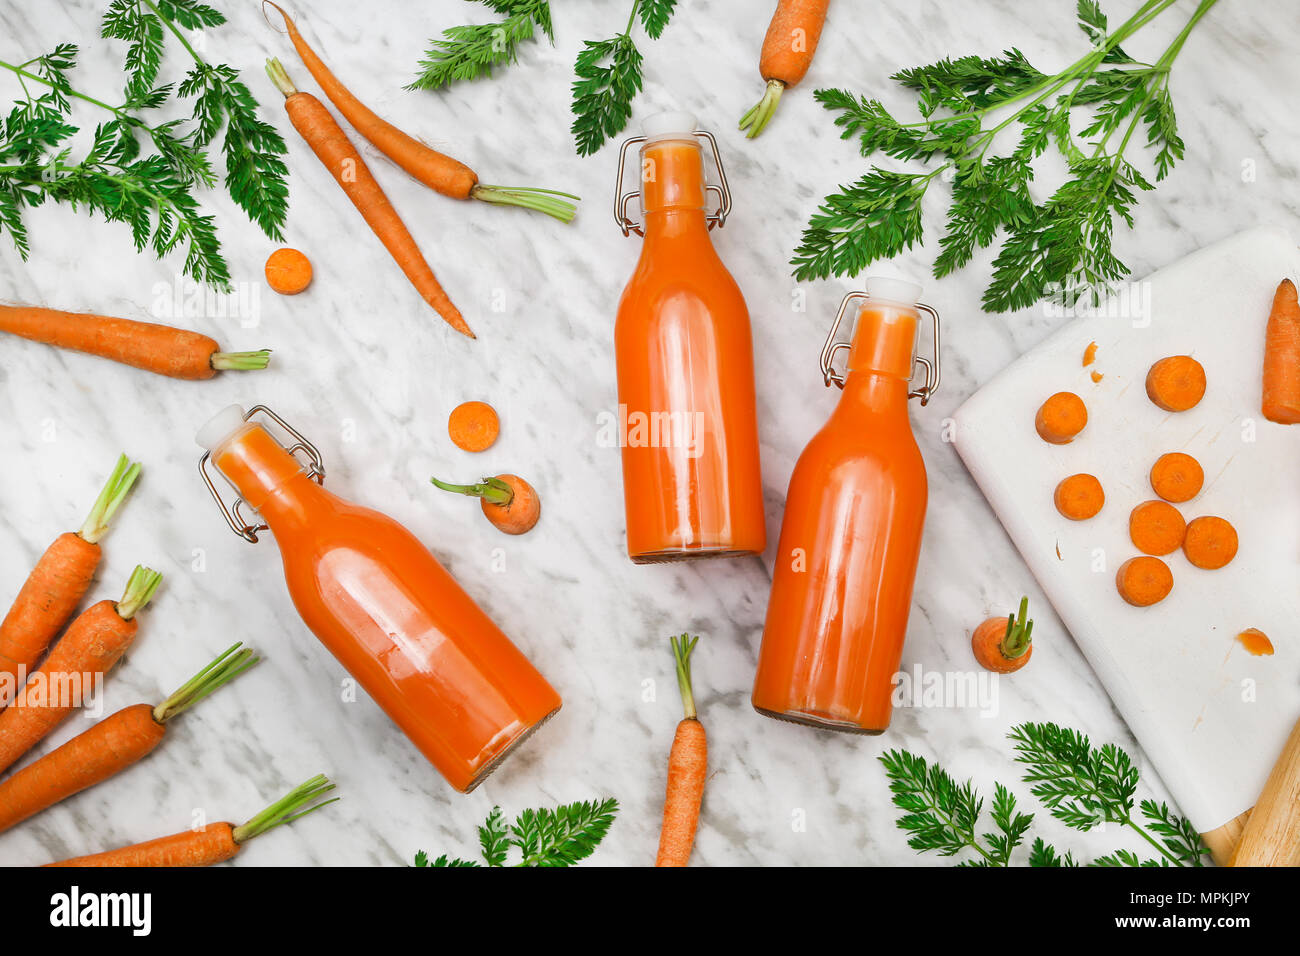 Homemade carrot juice in bottles Stock Photo